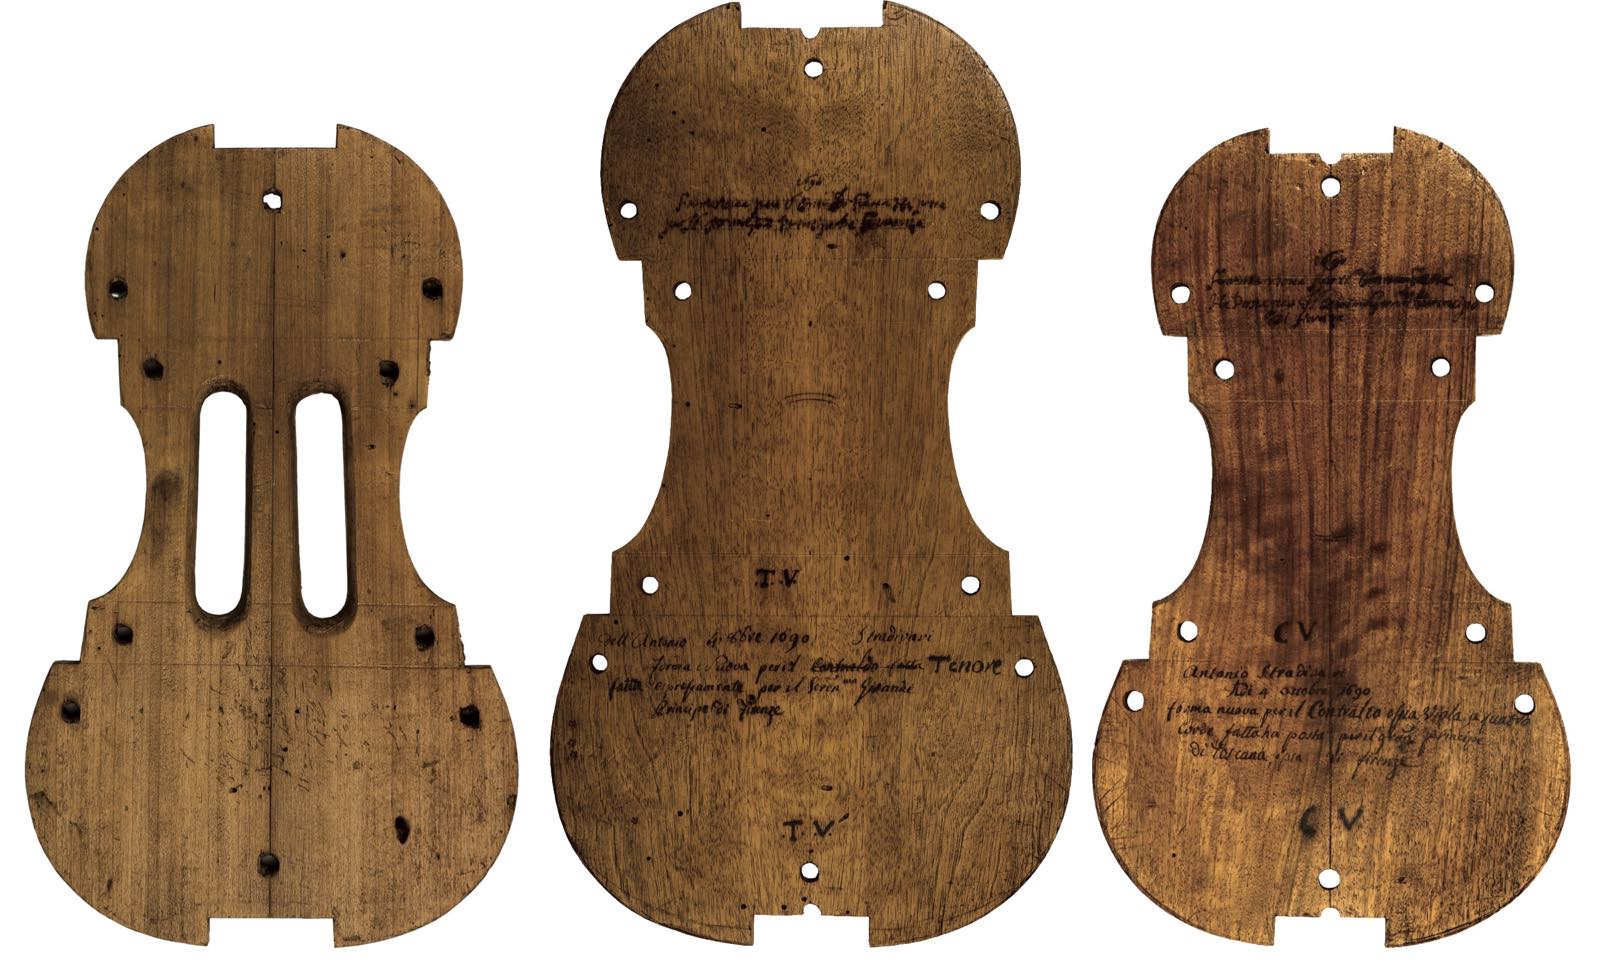 Strad viola forms